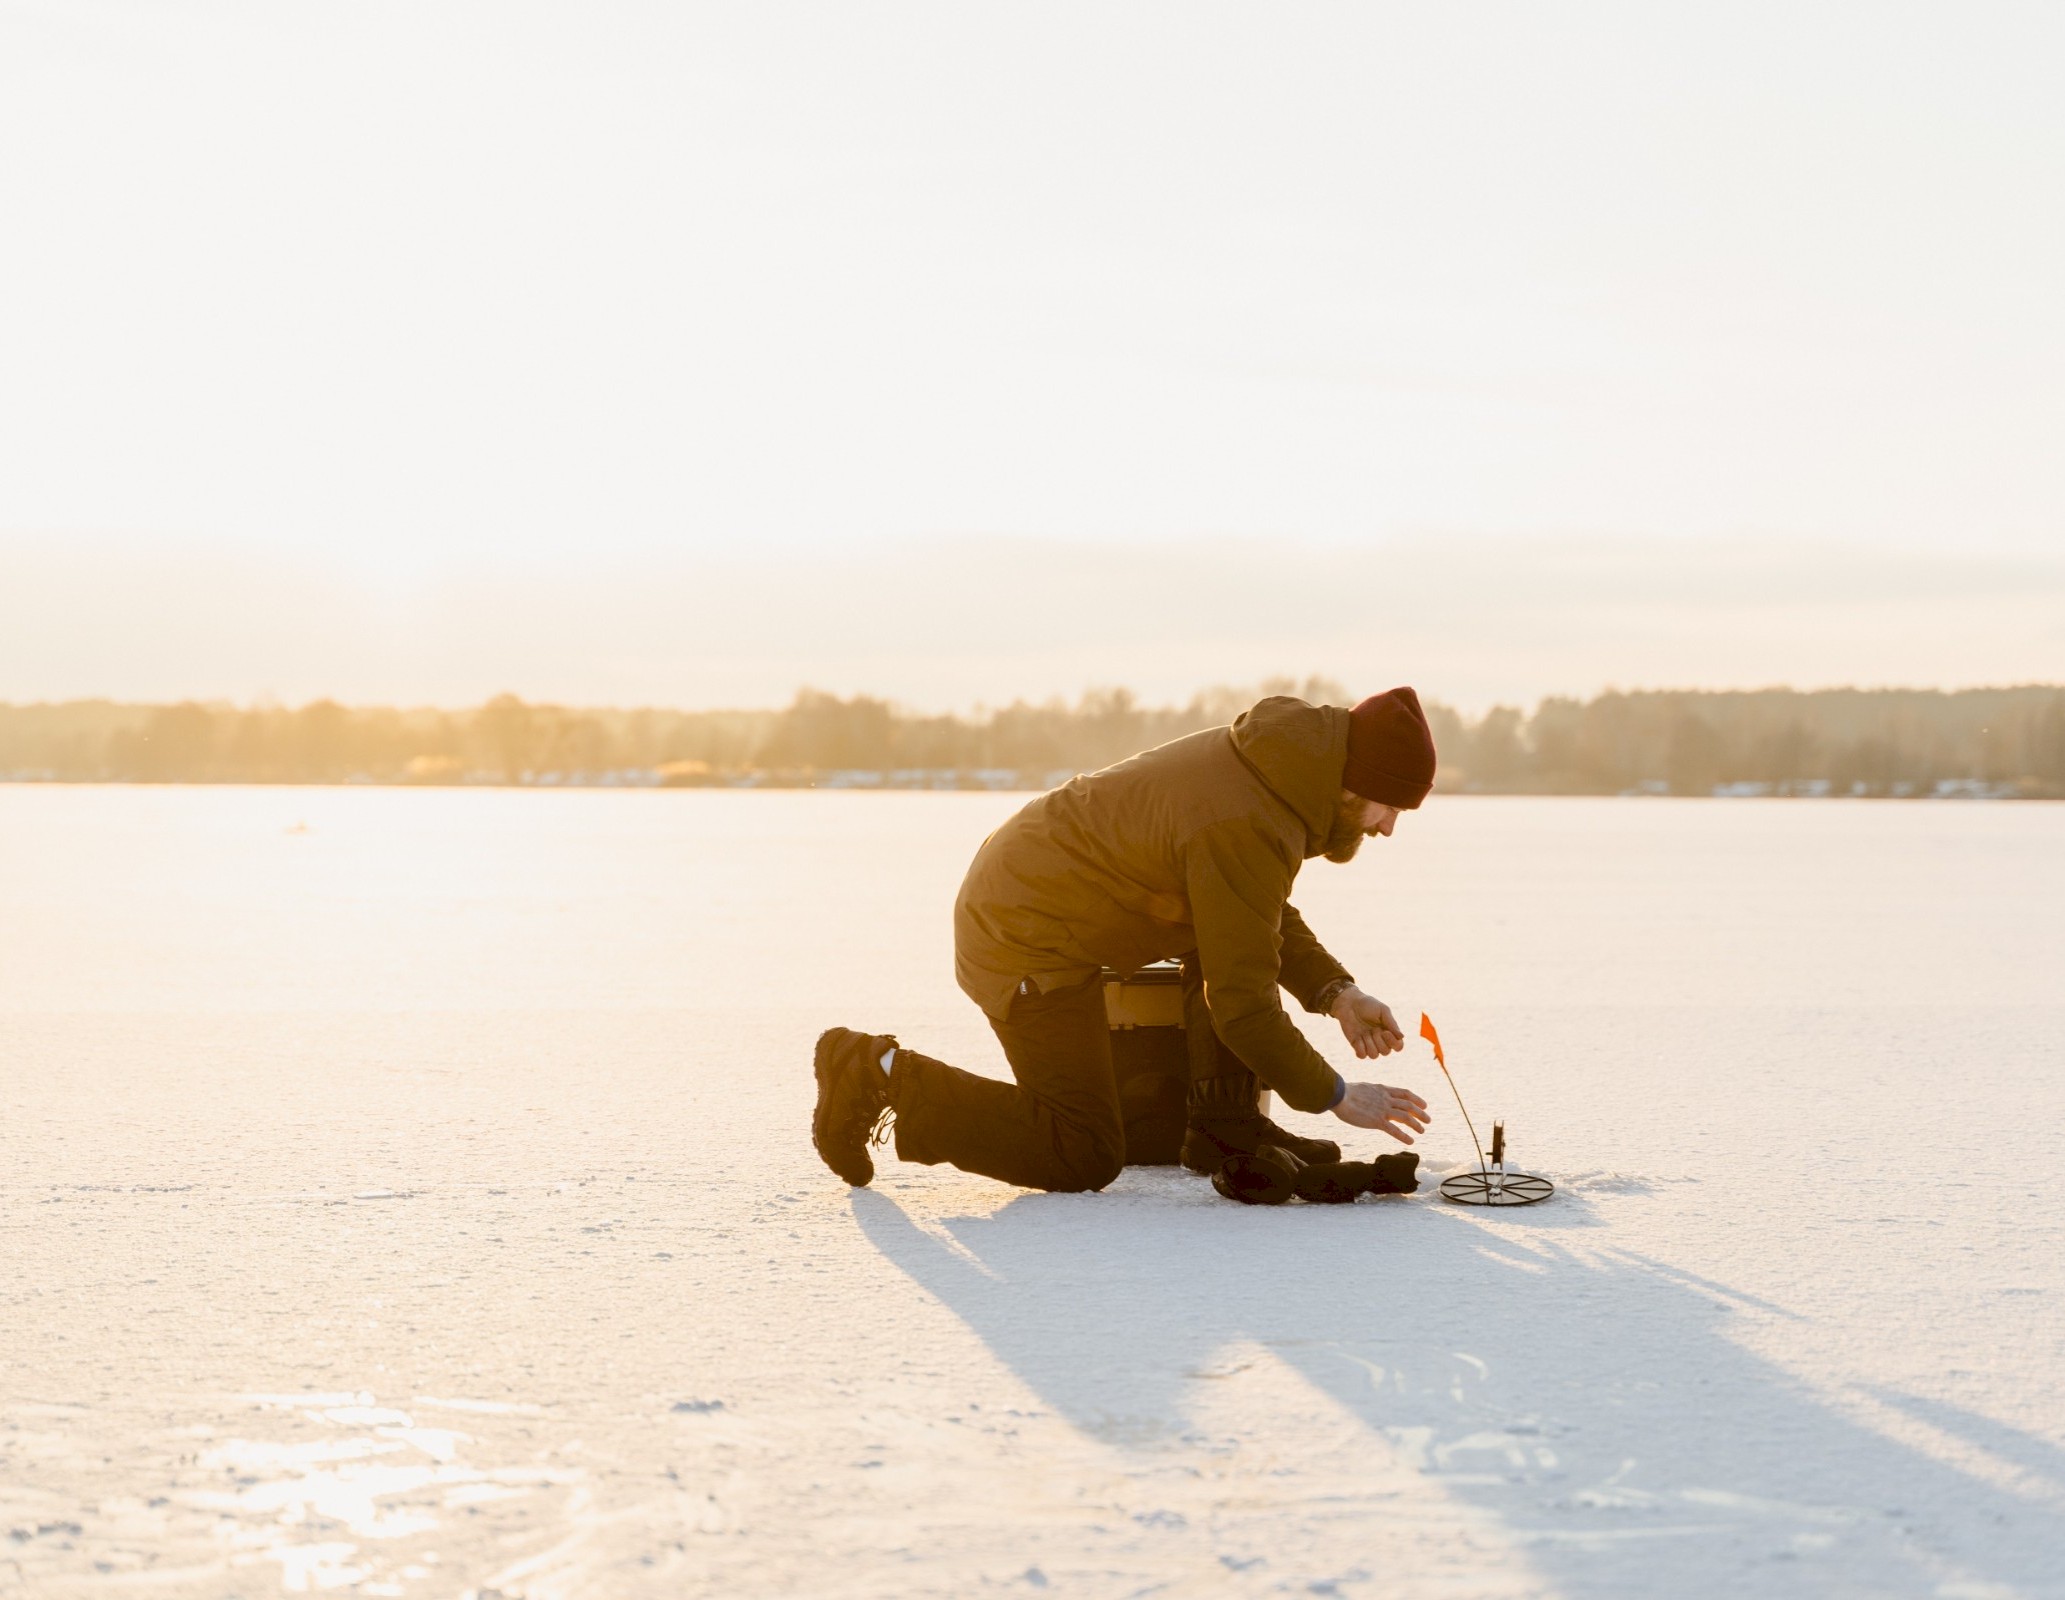 Un homme fait de la pêche sur la glace du lac gelé